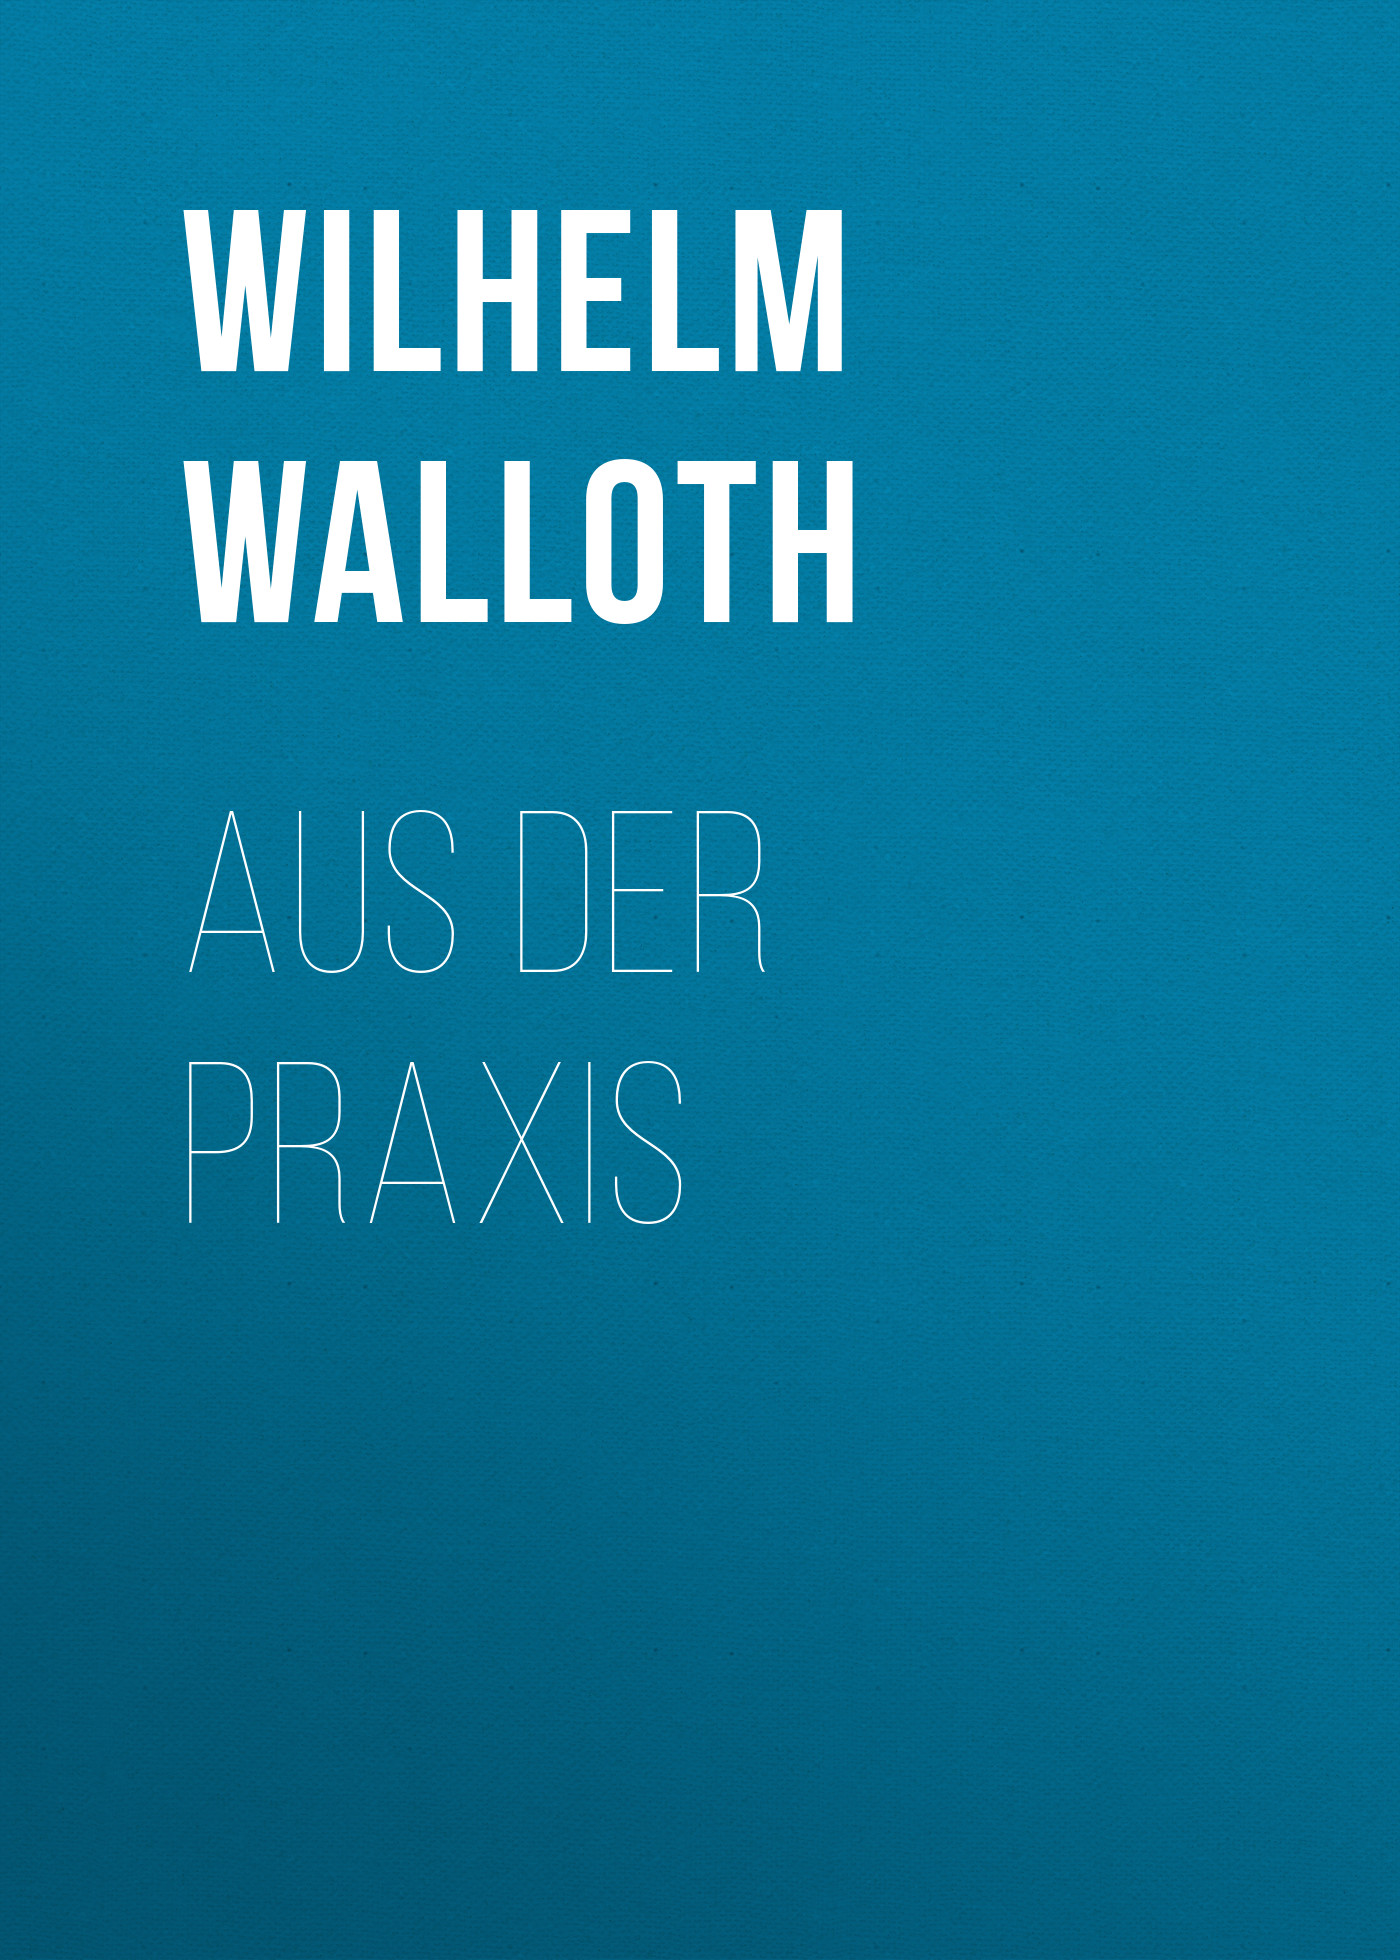 Книга Aus der Praxis из серии , созданная Wilhelm Walloth, может относится к жанру Зарубежная классика. Стоимость электронной книги Aus der Praxis с идентификатором 48631700 составляет 0 руб.